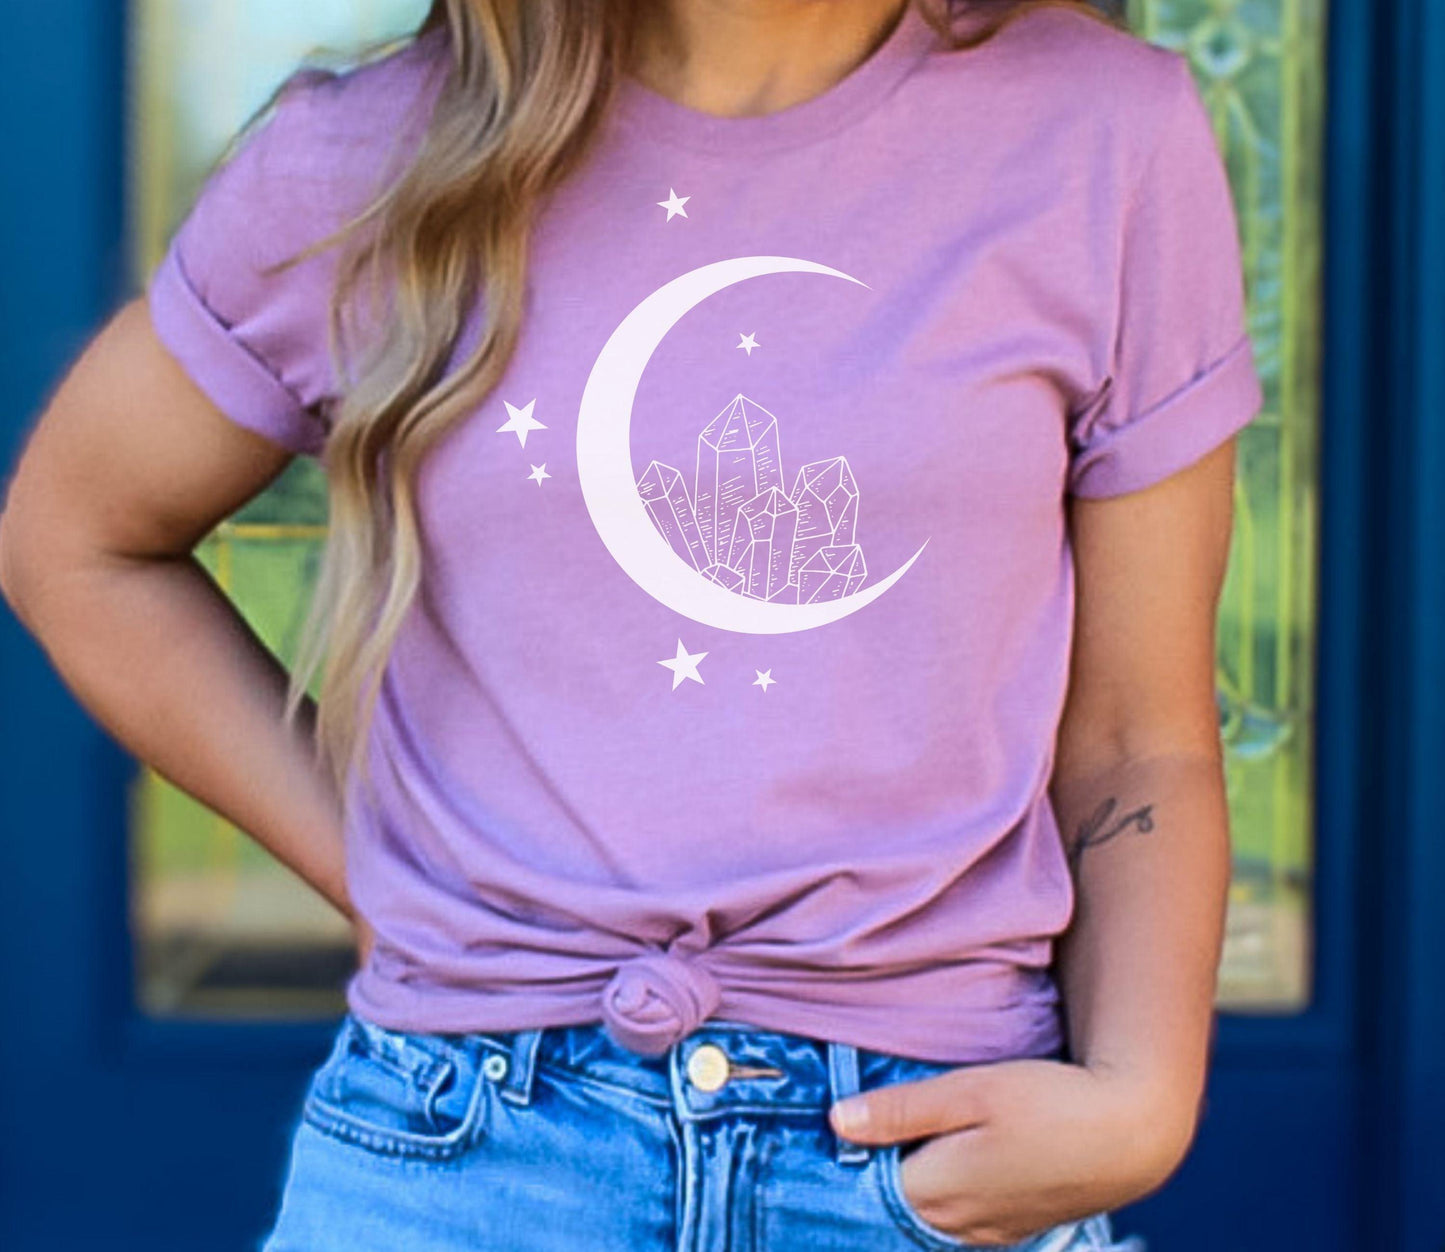 Crystal Moon Shirt - BentleyBlueCo